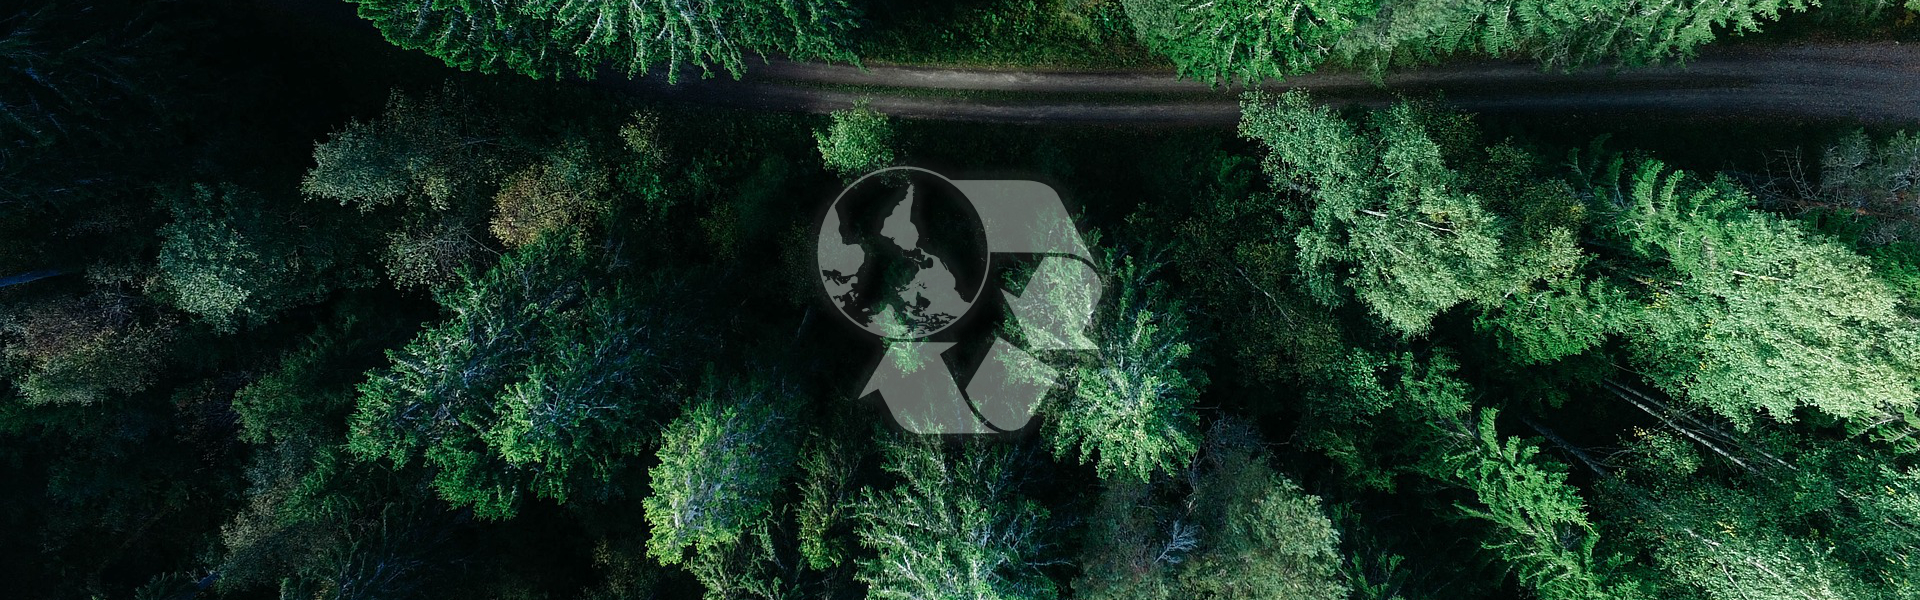 las pokazany z góry ze znakiem recyklingu